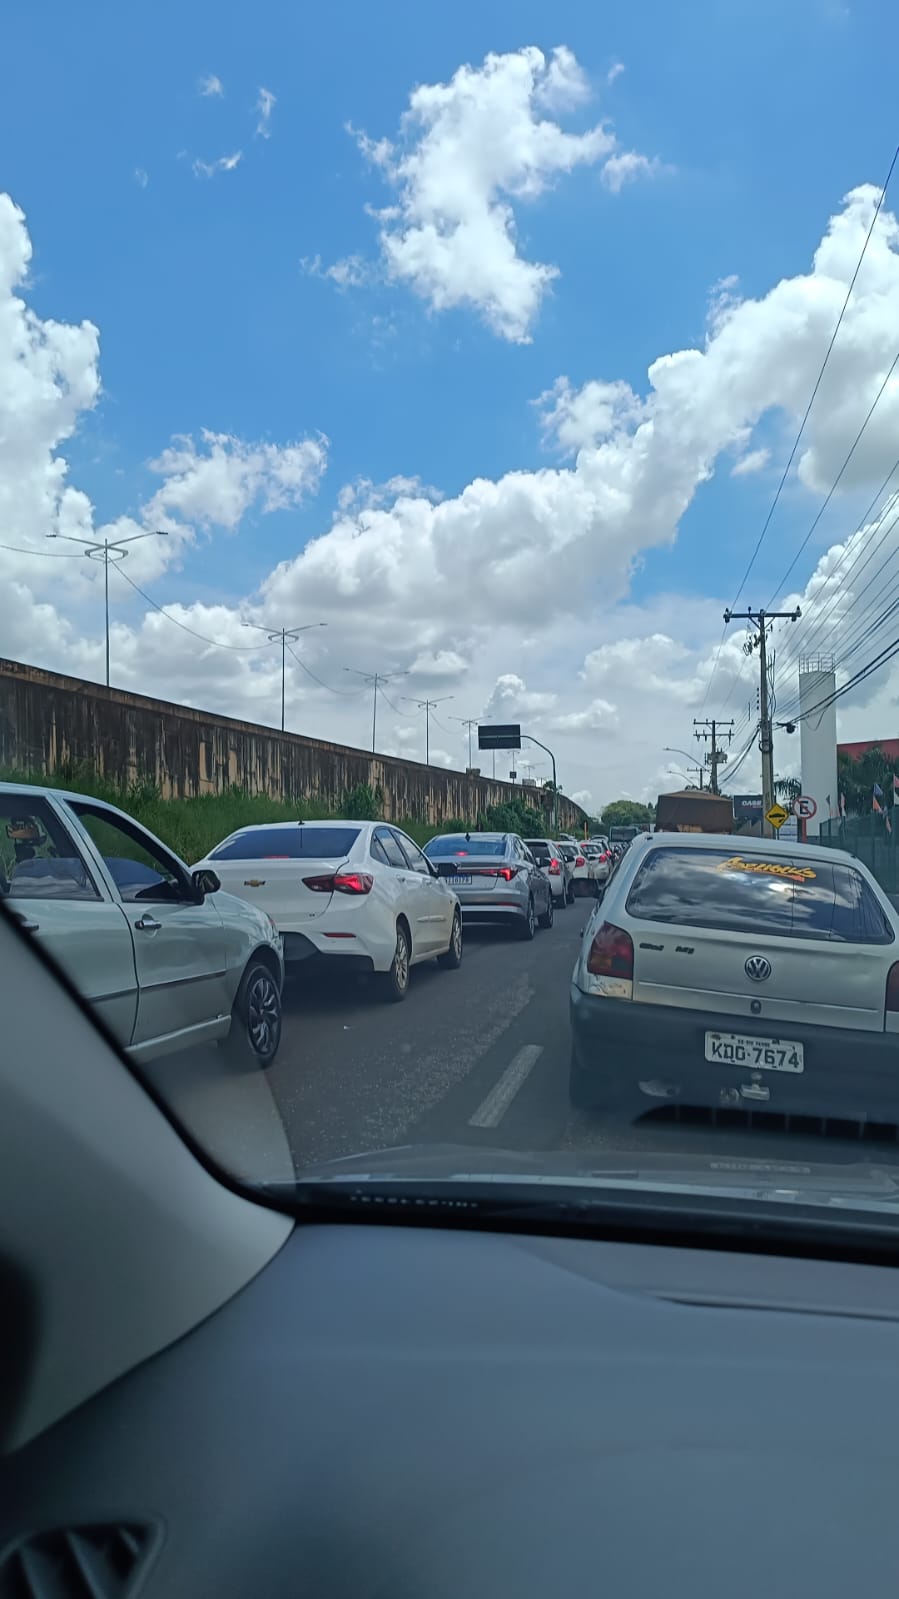 Trânsito congestionado próximo aos atacadistas, devido ao túnel da Promissão fechado e obras no Gameleira, em Rio Verde